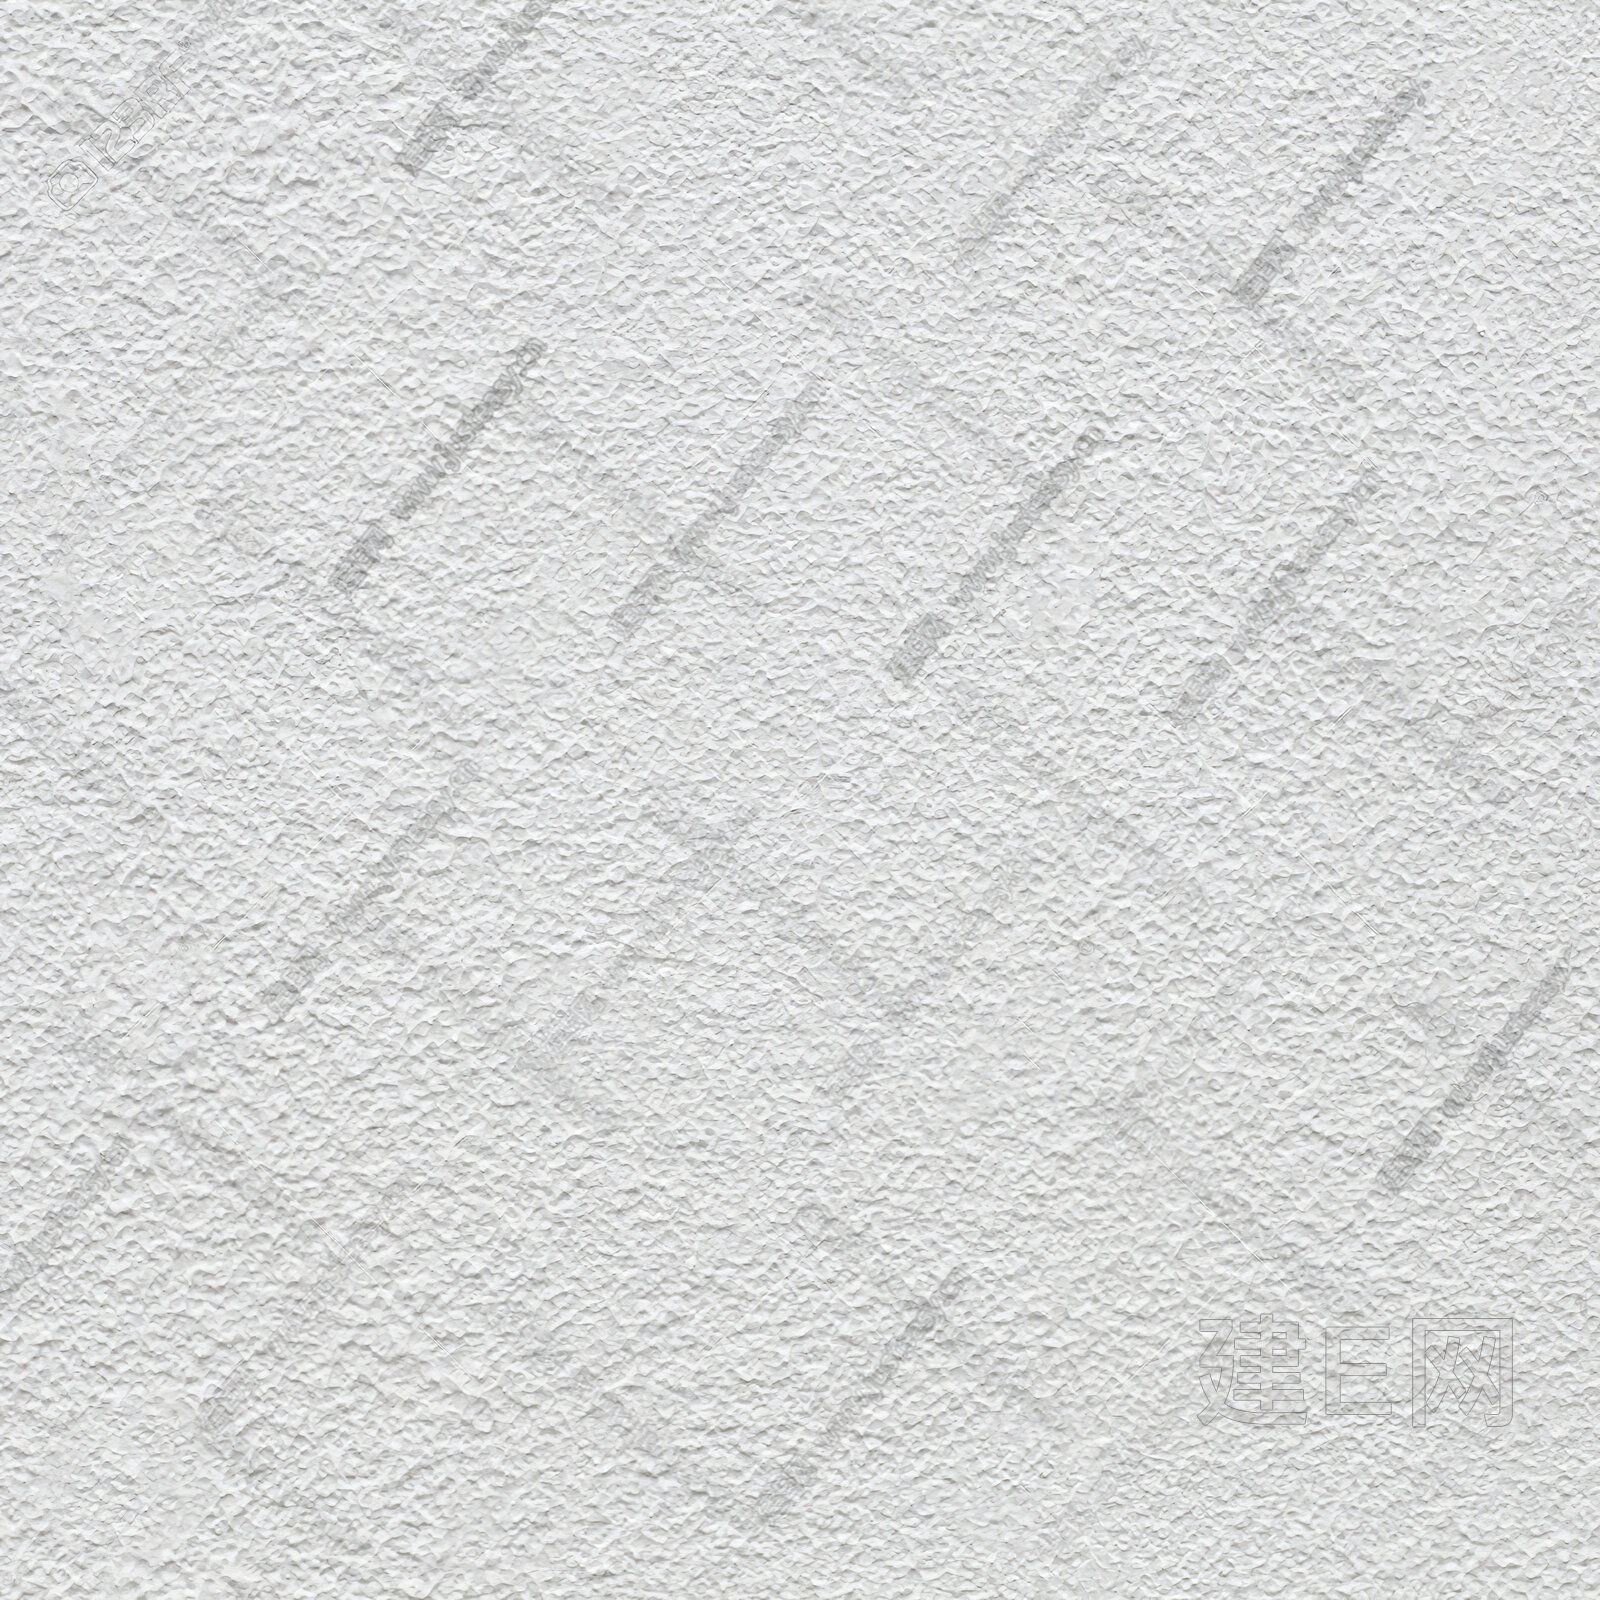 肌理漆肌理墙面真石漆涂料a (3)-SketchUp资源网